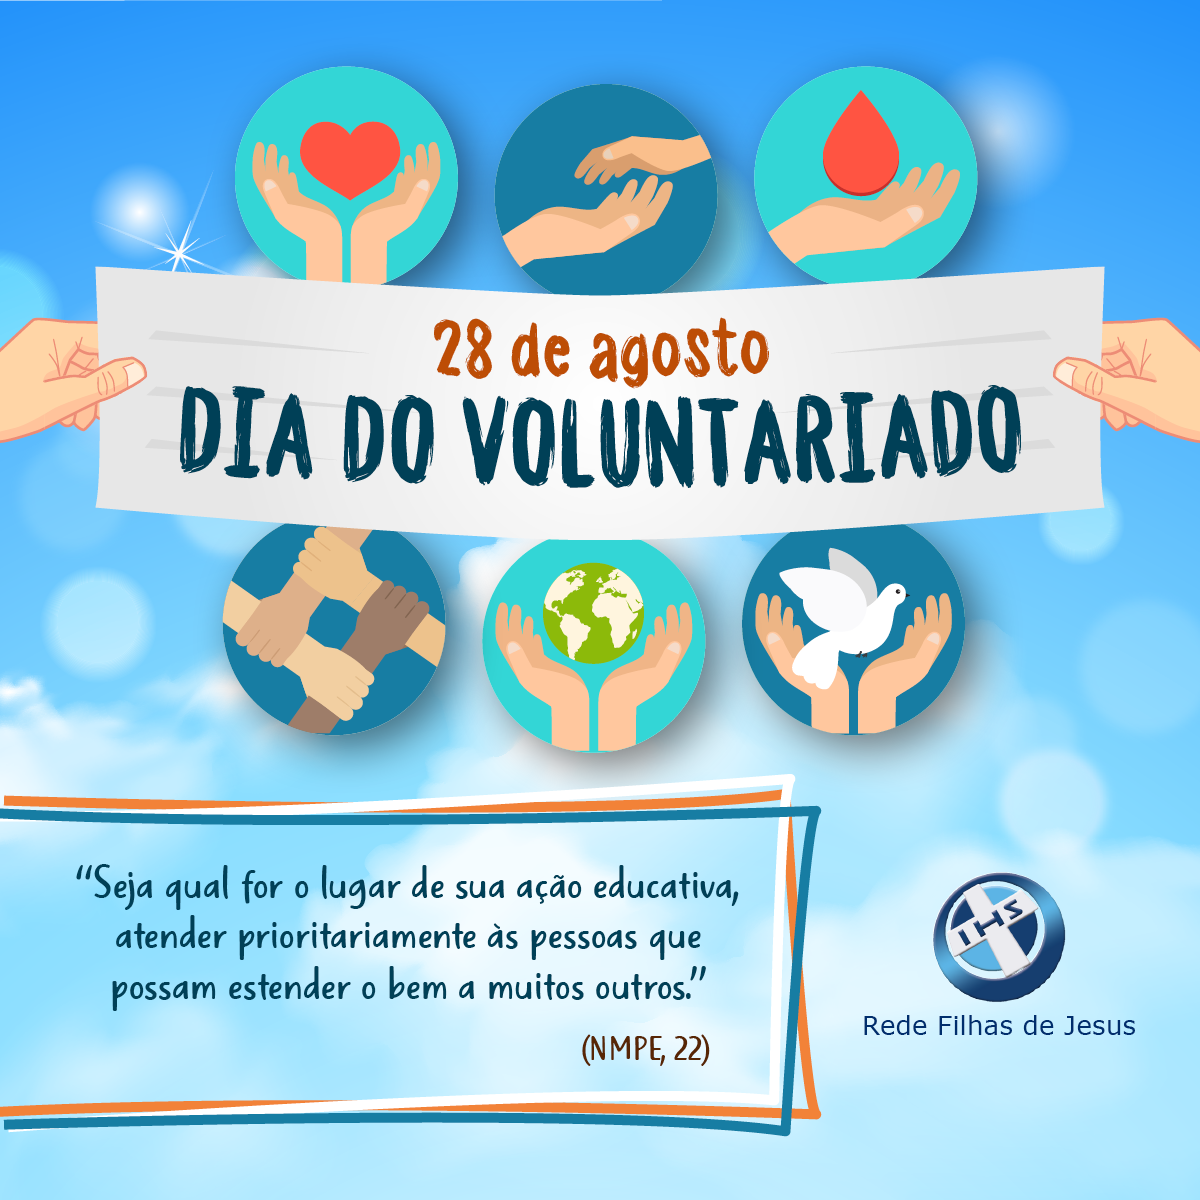 Calendário – 28 de agosto – Dia Nacional do Voluntariado – CRF-CE